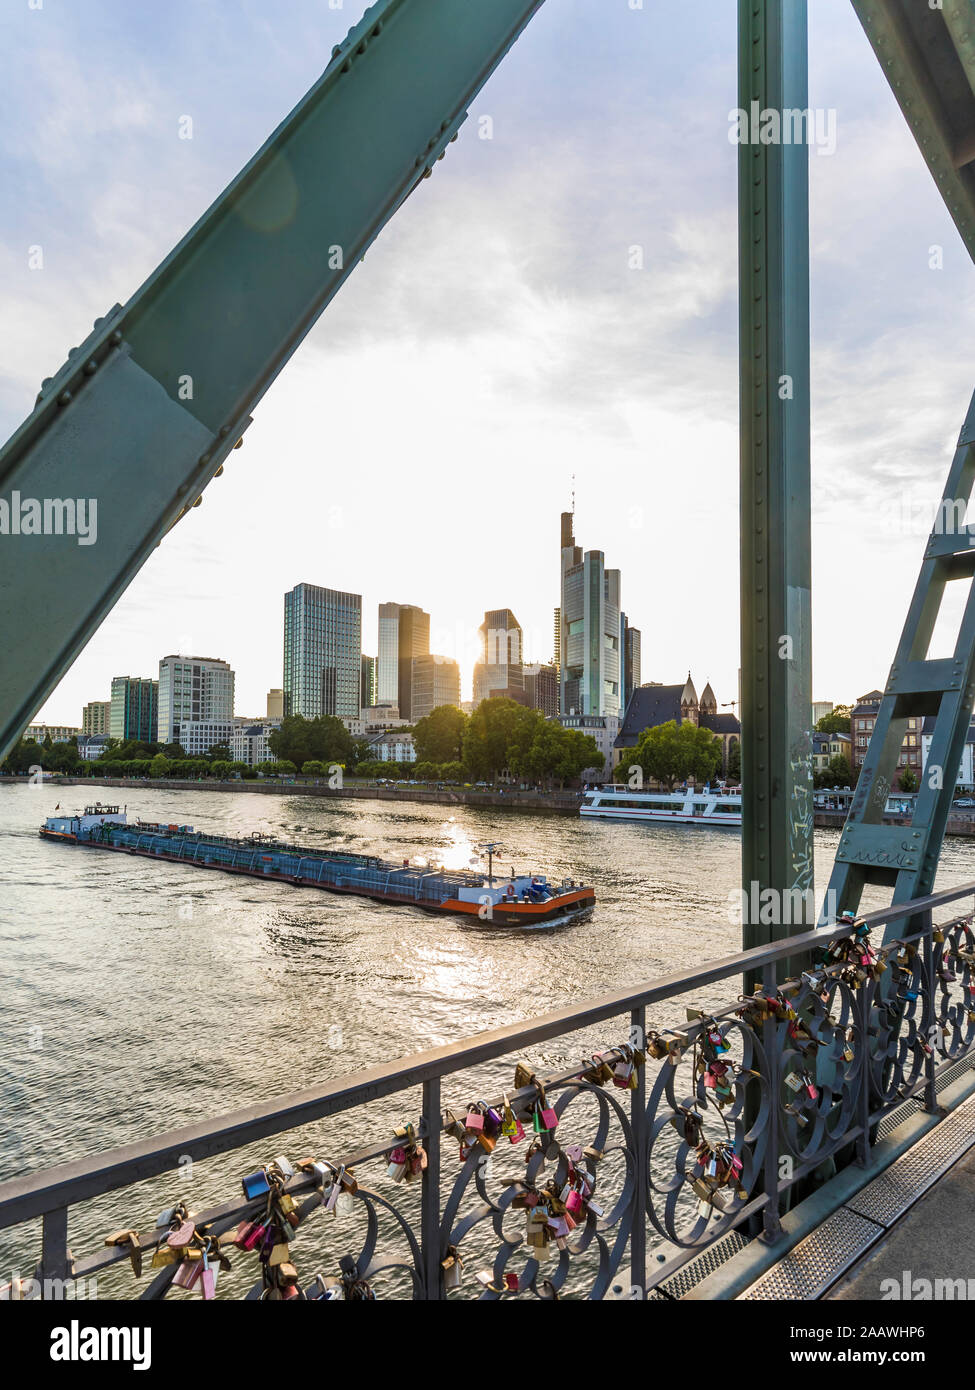 Eiserner Steg sur la rivière contre le ciel de Francfort, Allemagne Banque D'Images